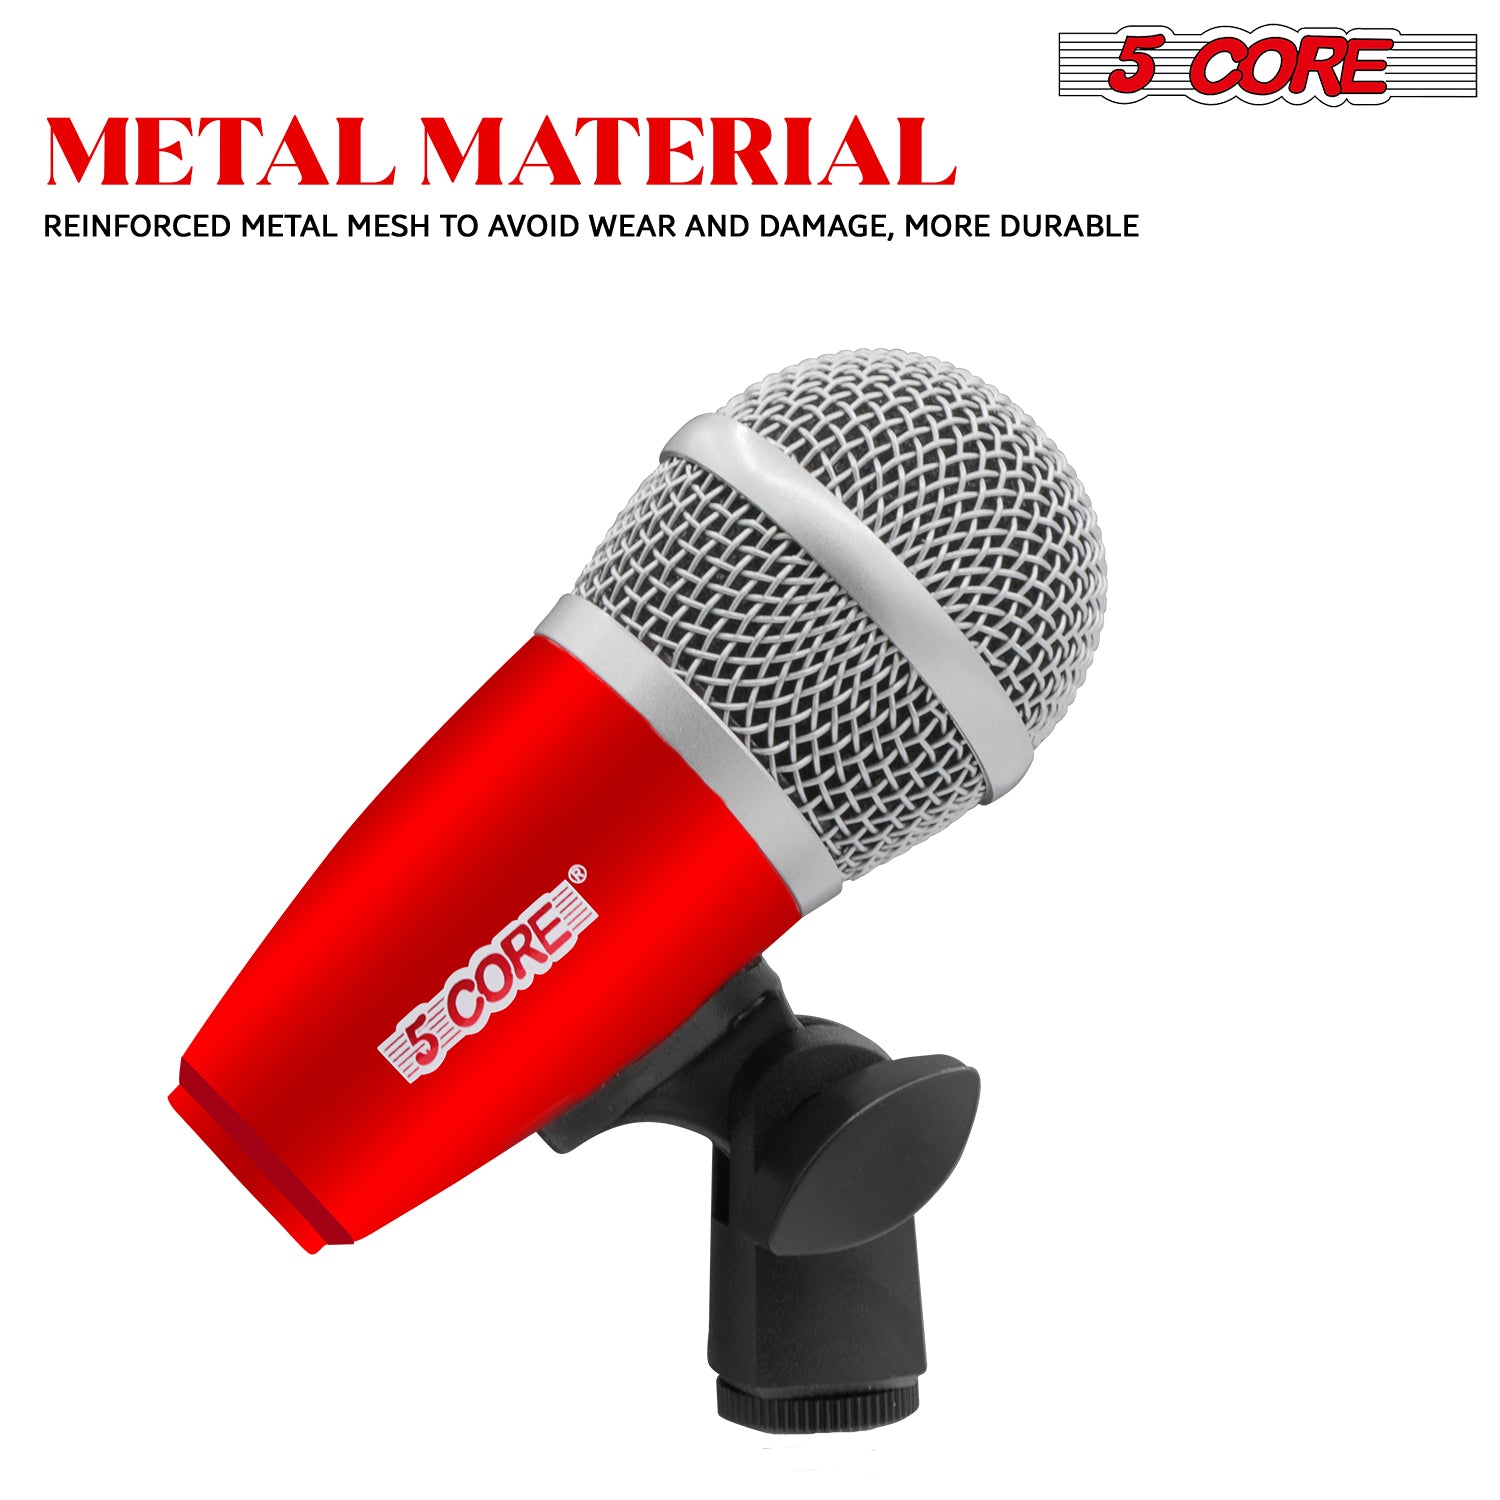 Metal material mics